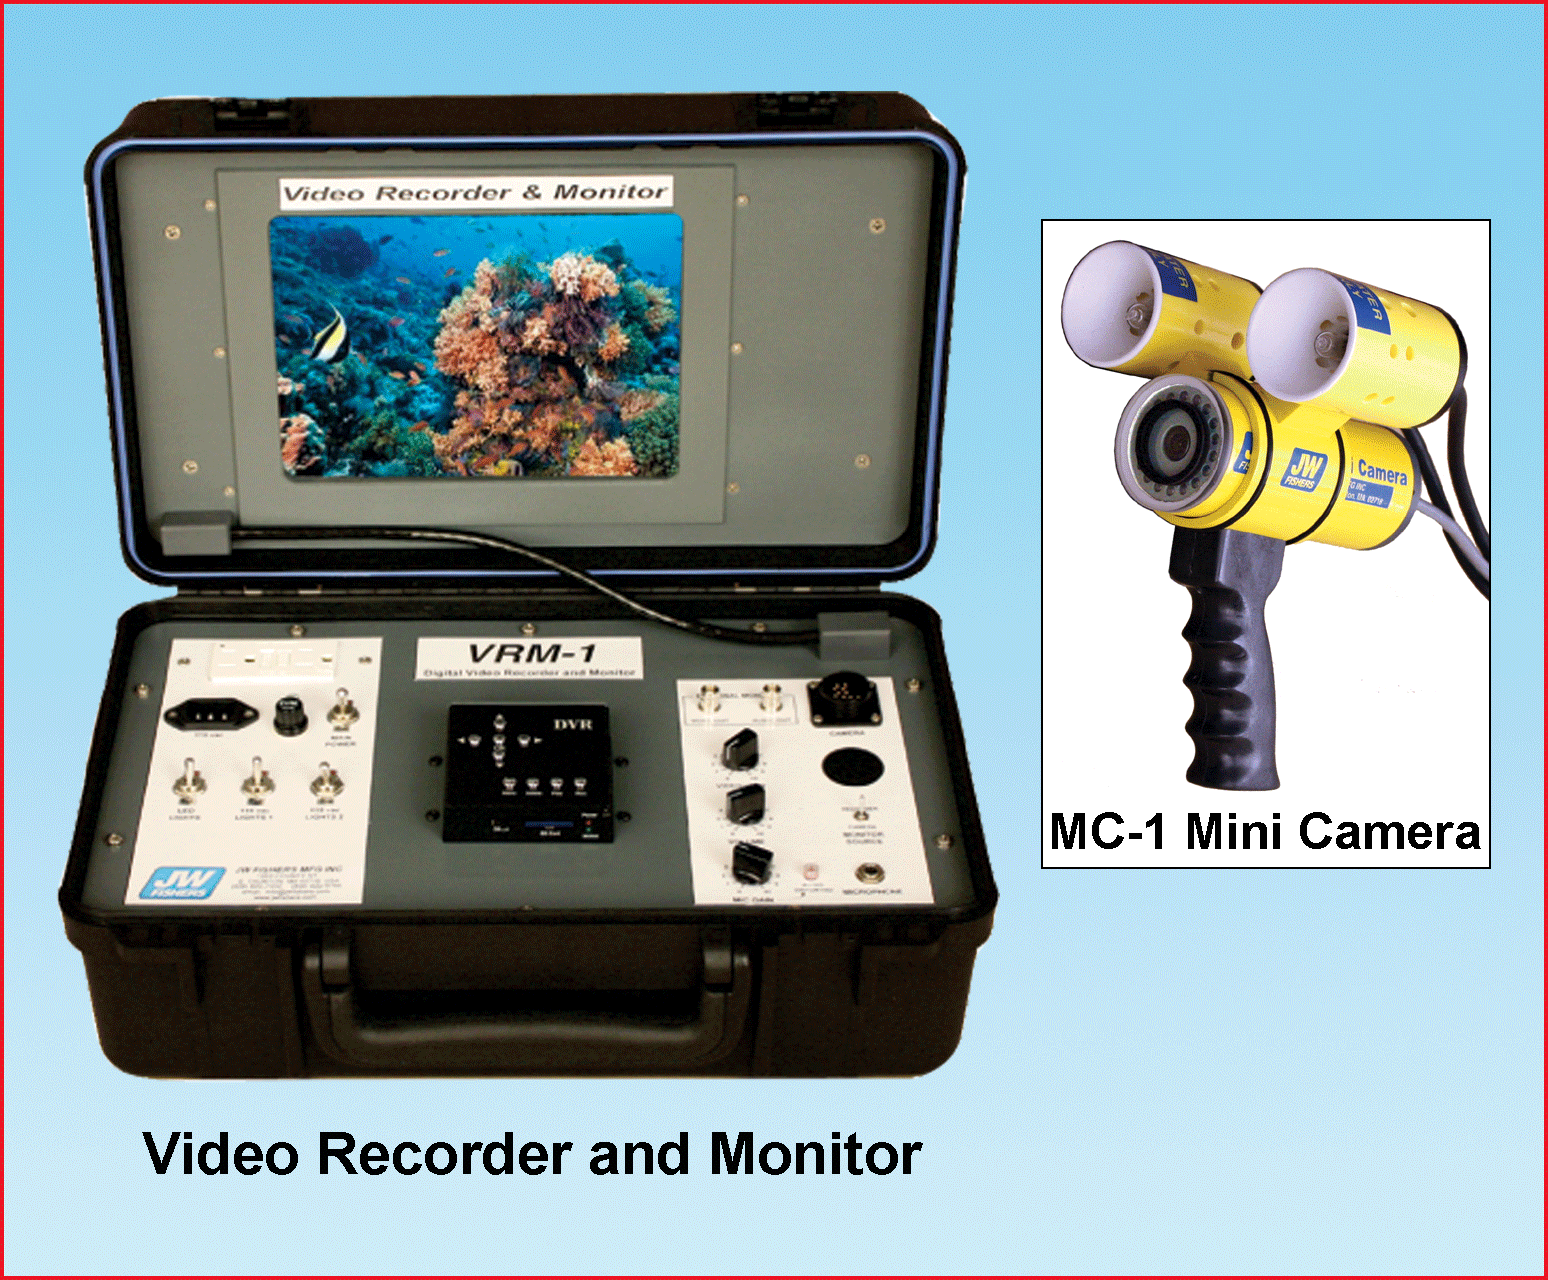 (Left) Video Recorder and Monitor; (Right) MC-1 Mini Camera